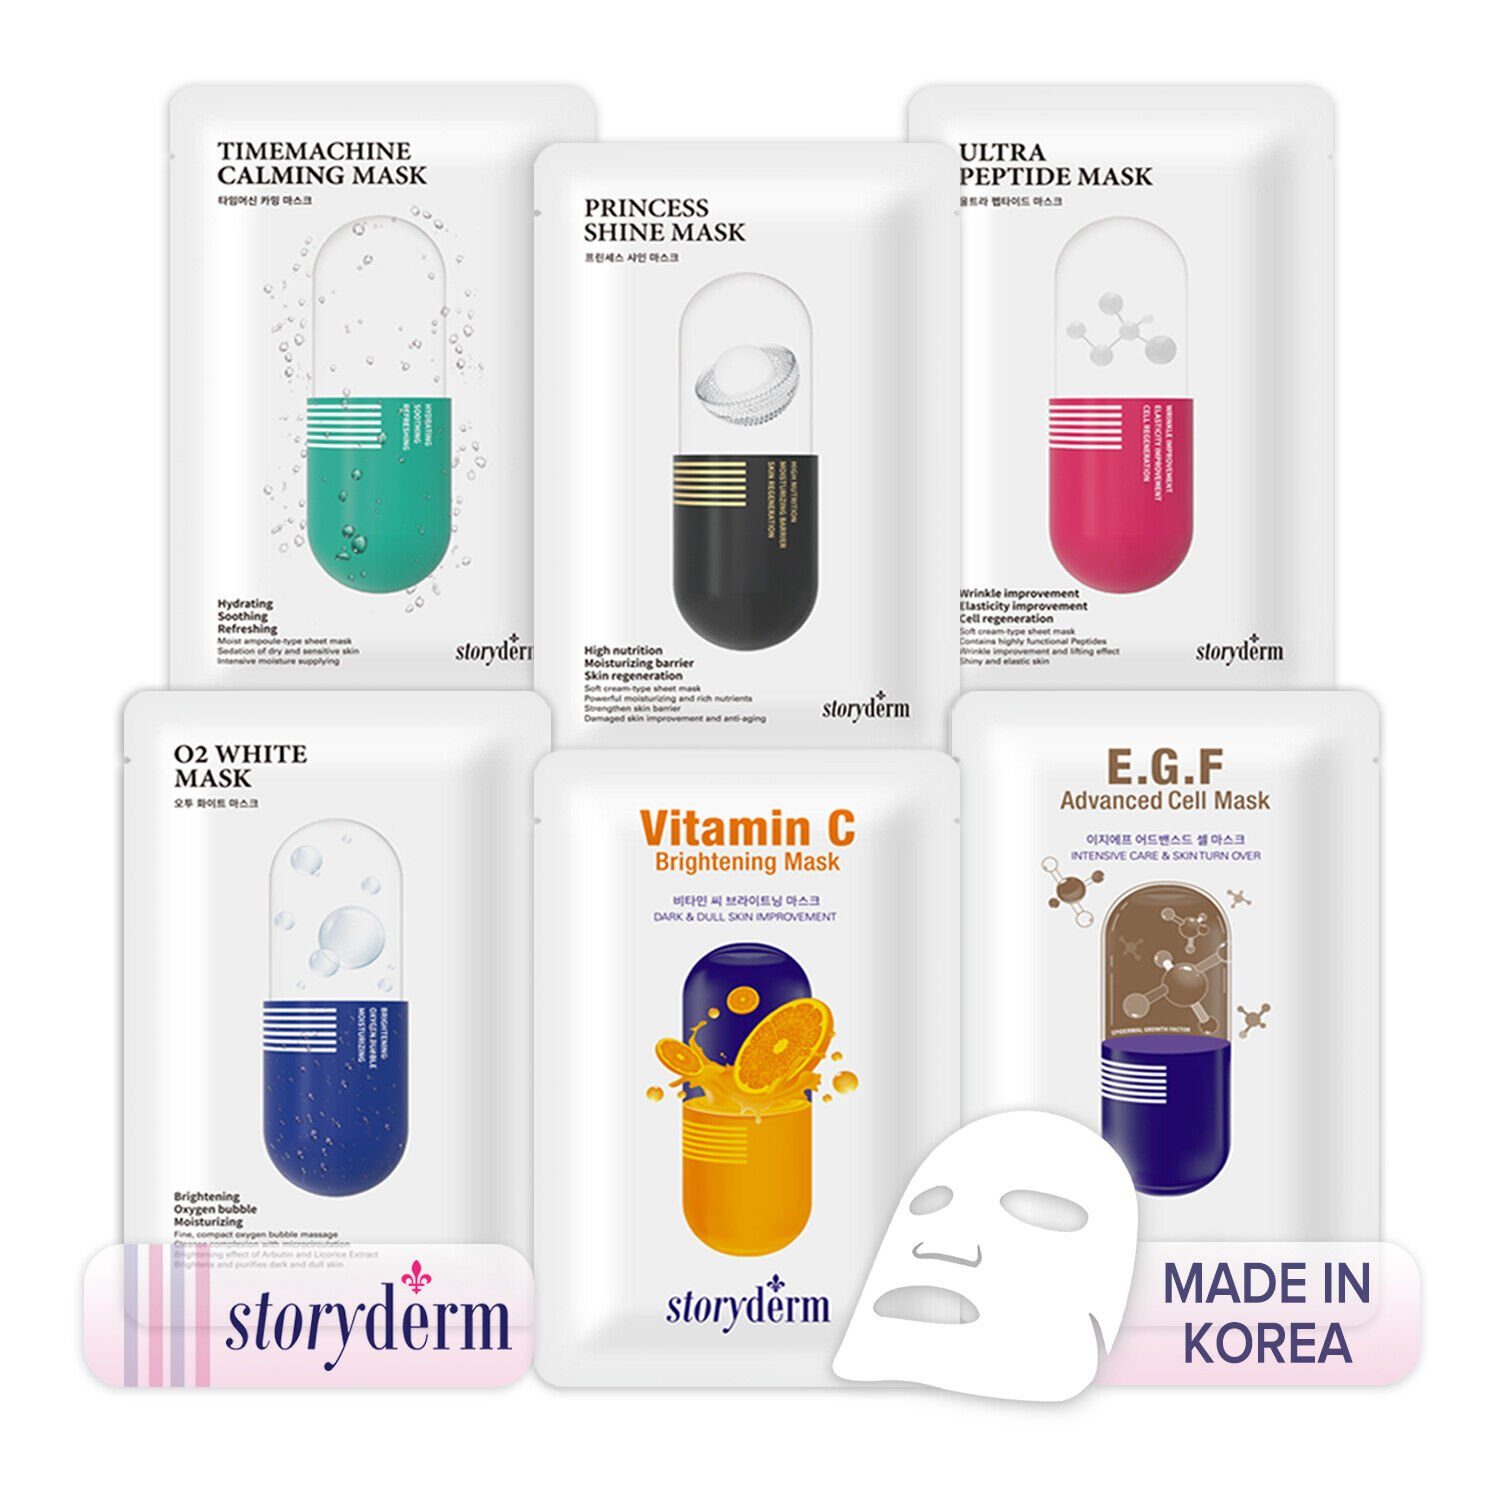 Pflege Storyderm Gesichtsmaske Premium VITAMIN Vitamin Storyderm C C, aus Korea 1-tlg. Gesichtsmaske NEUHEIT BRIGHTENING Tuchmaske